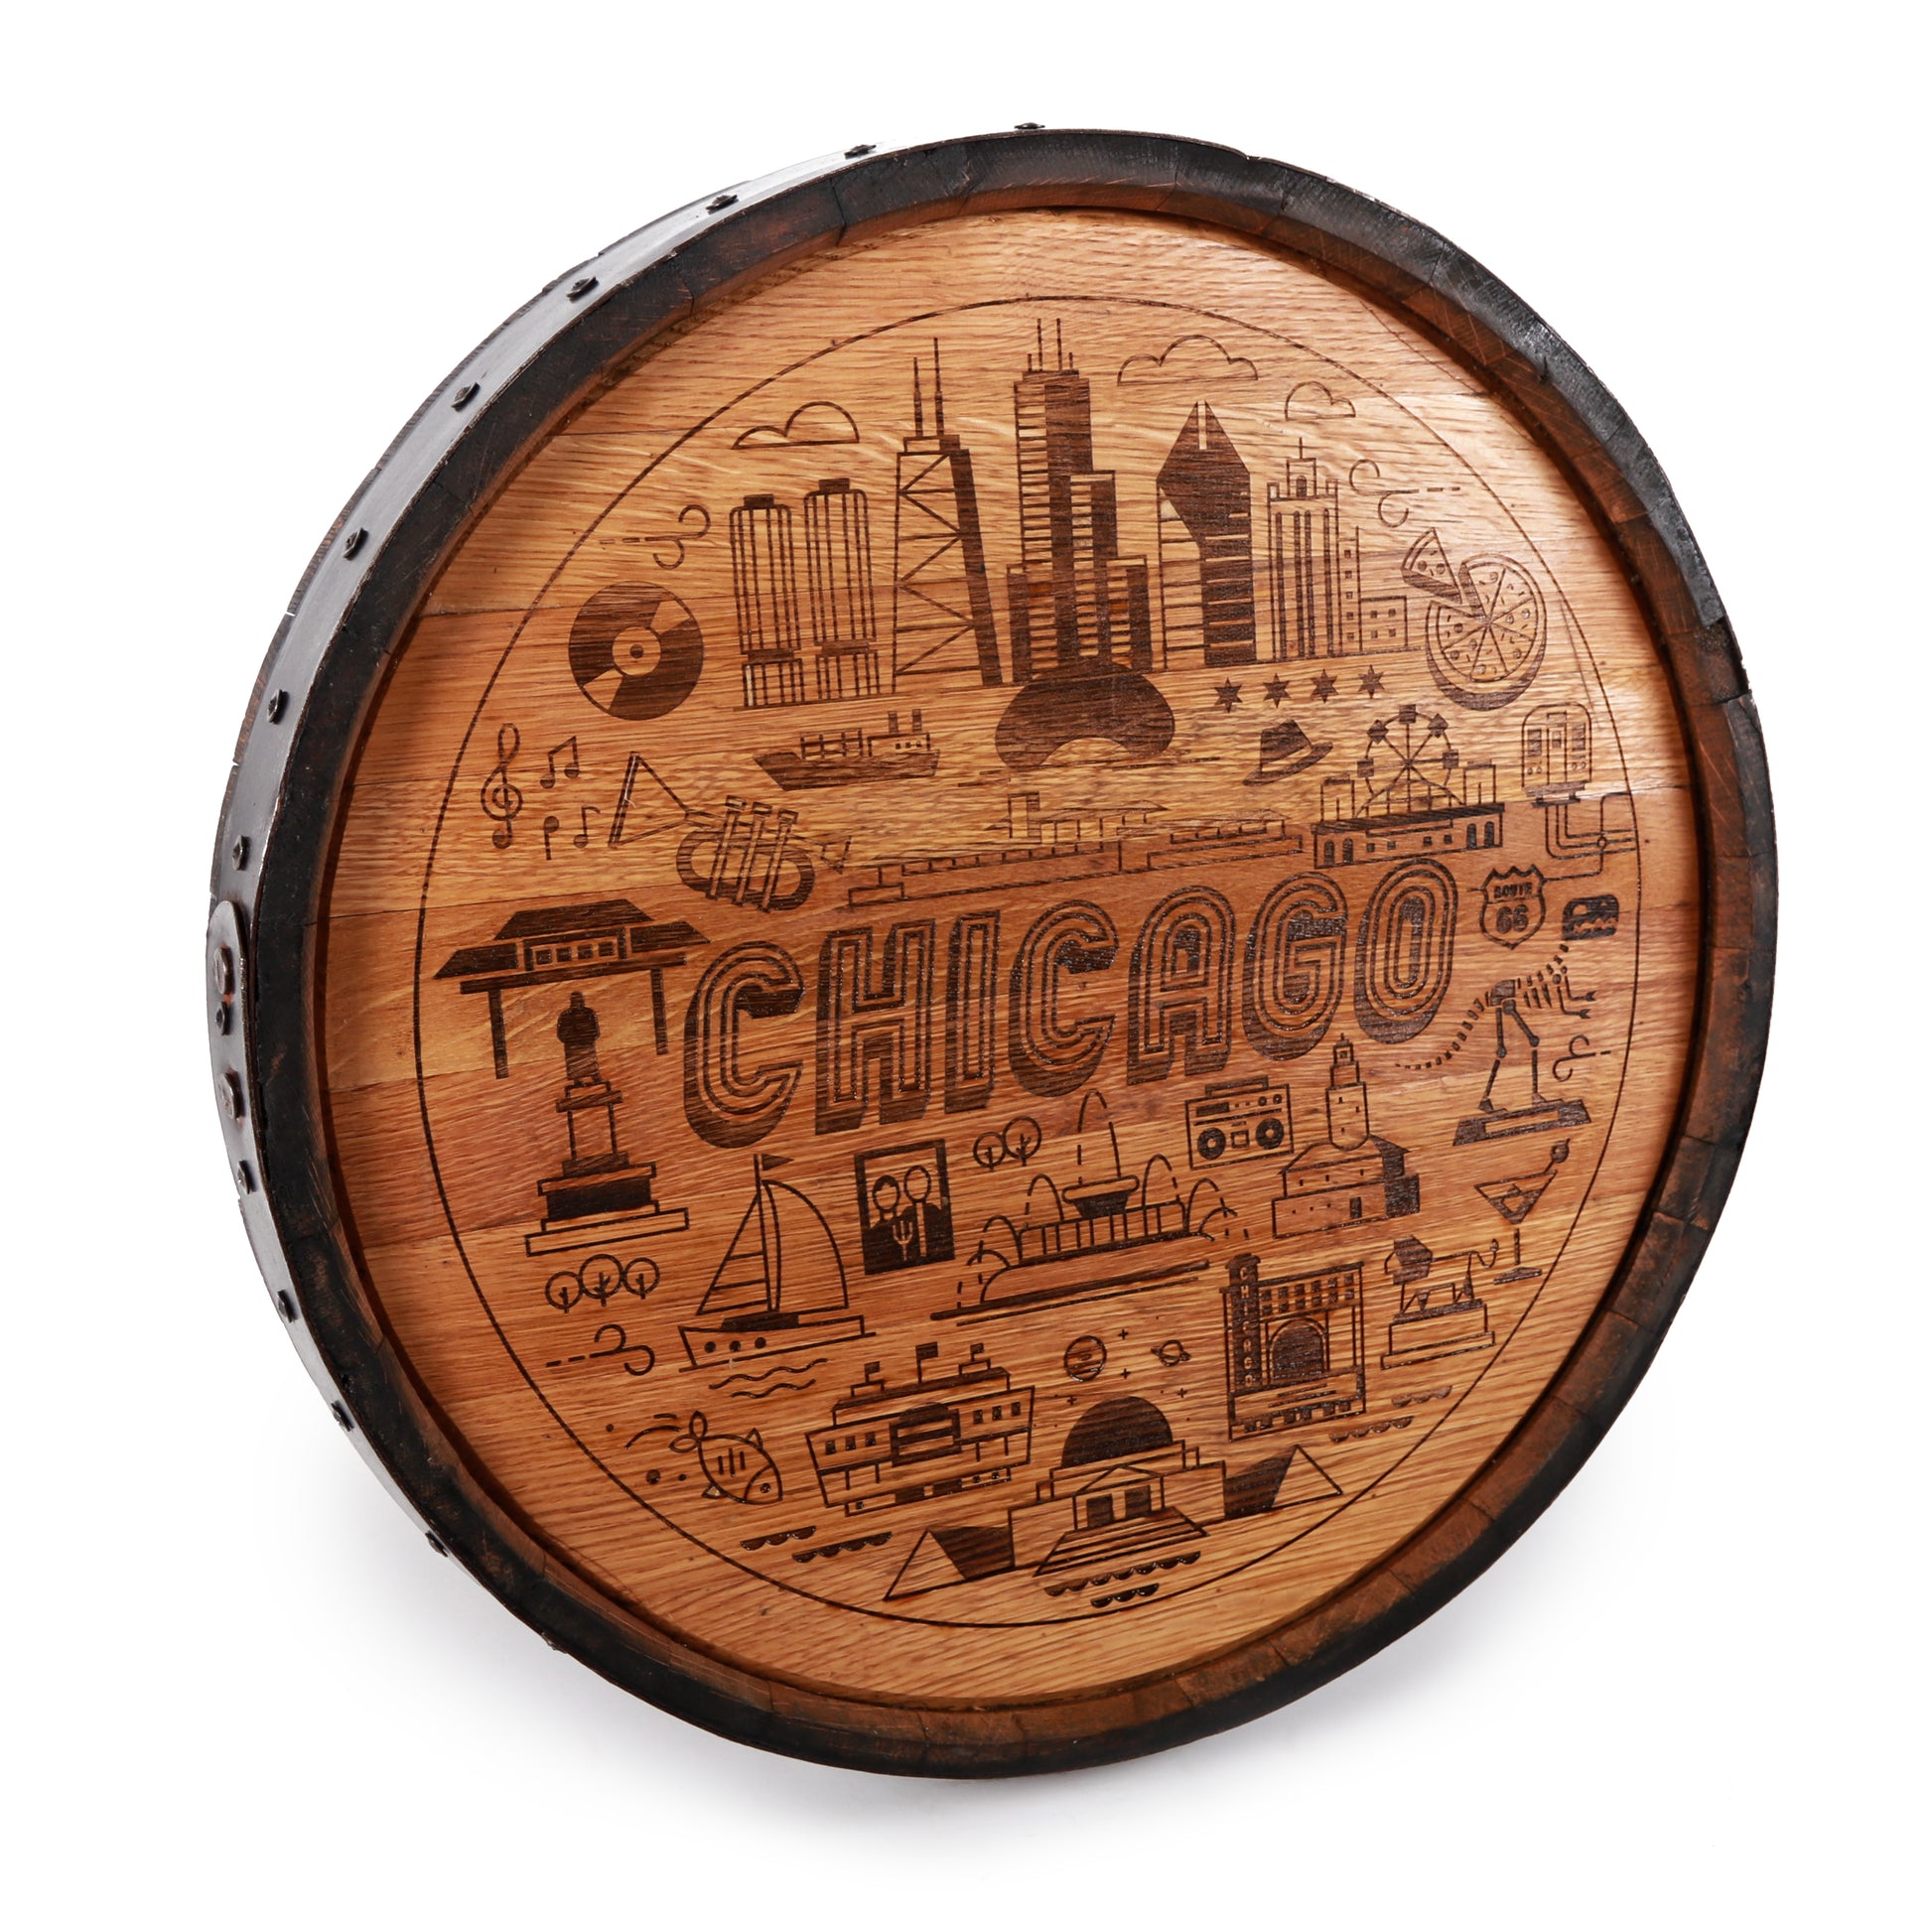 Chicago Design Engraved Whiskey Barrel Cap - Motor City Barrels